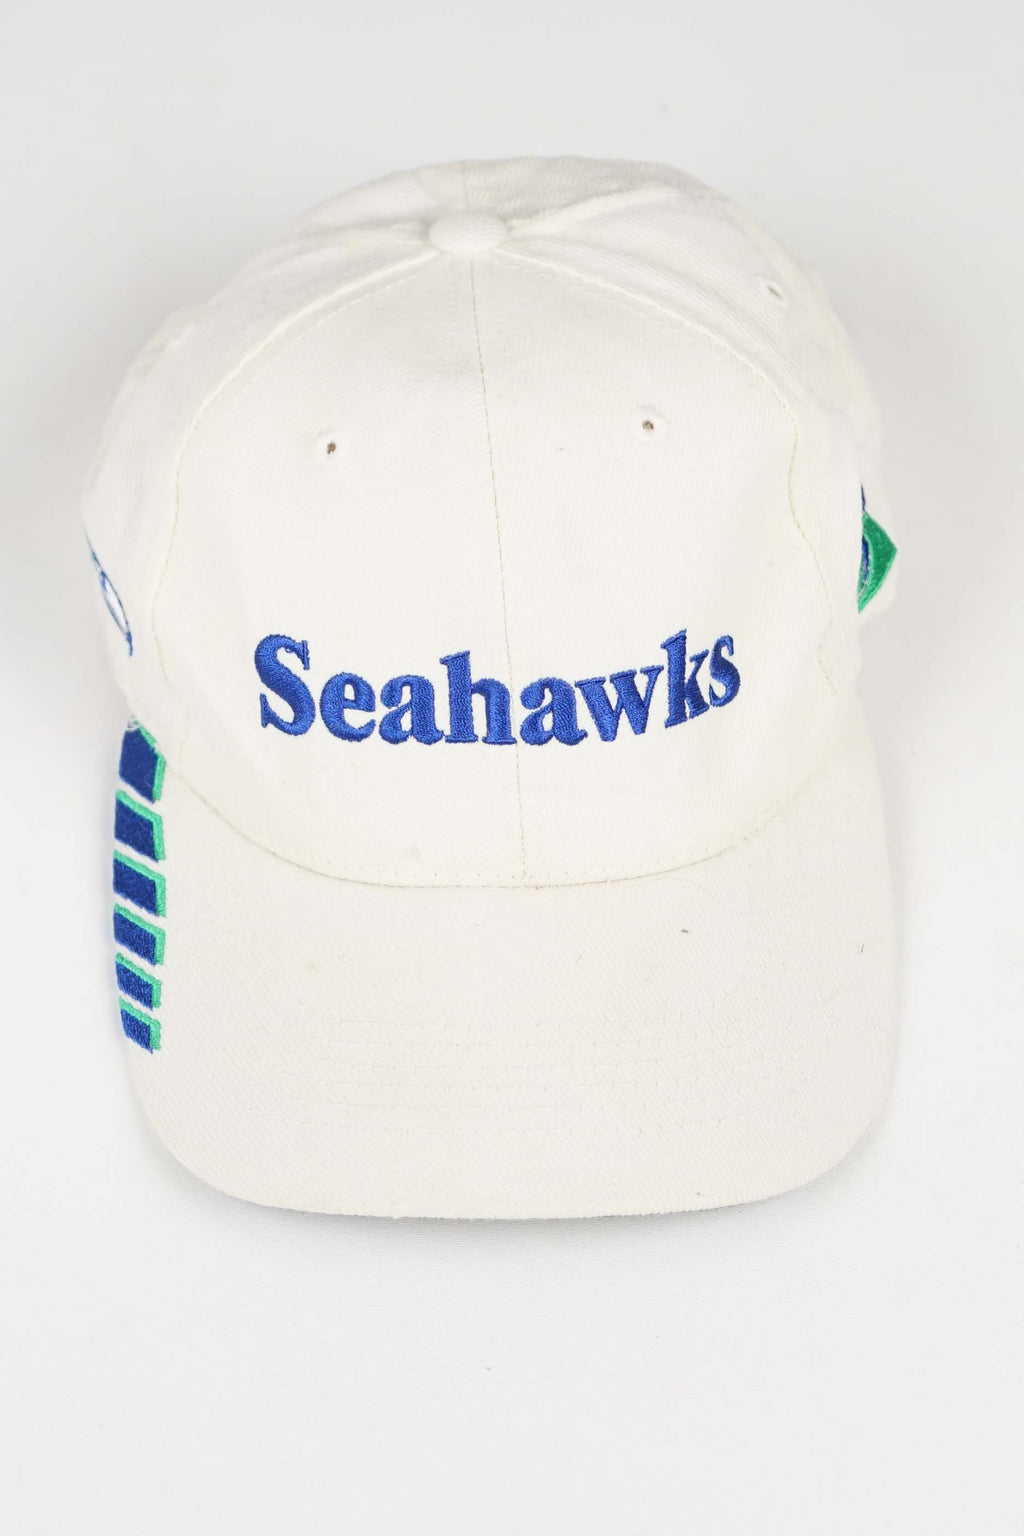 VINTAGE SEATTLE SEAHAWKS HAT